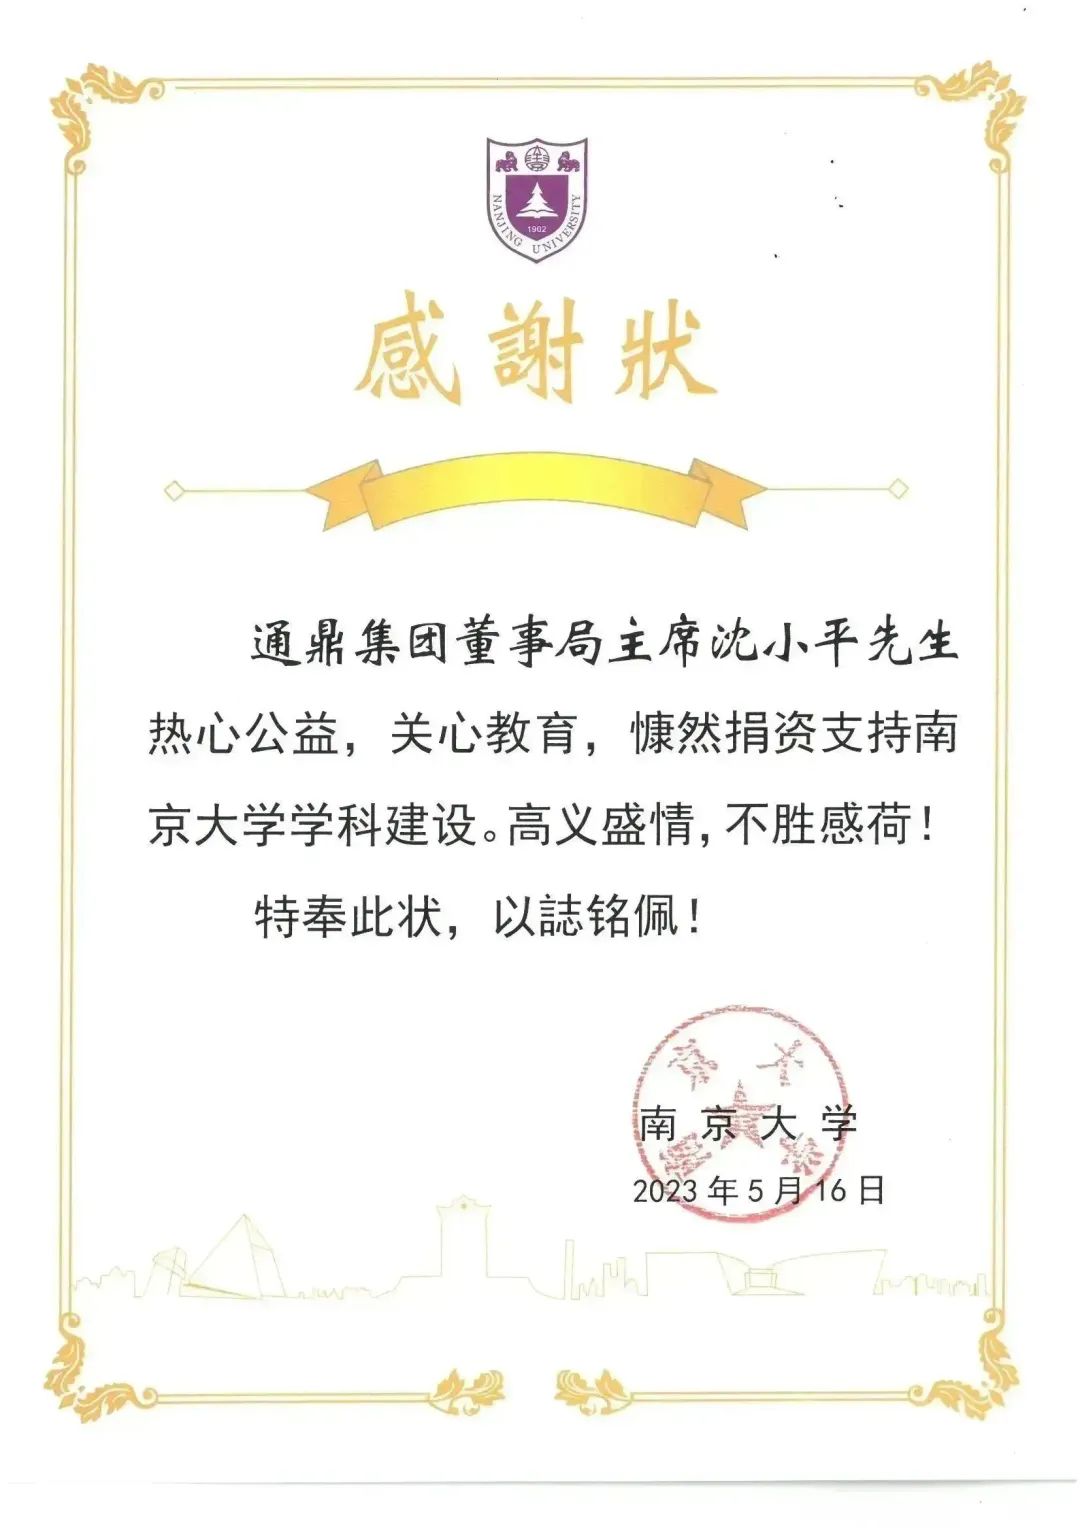 美高梅mgm1888网站向南京大学捐赠签约仪式举行